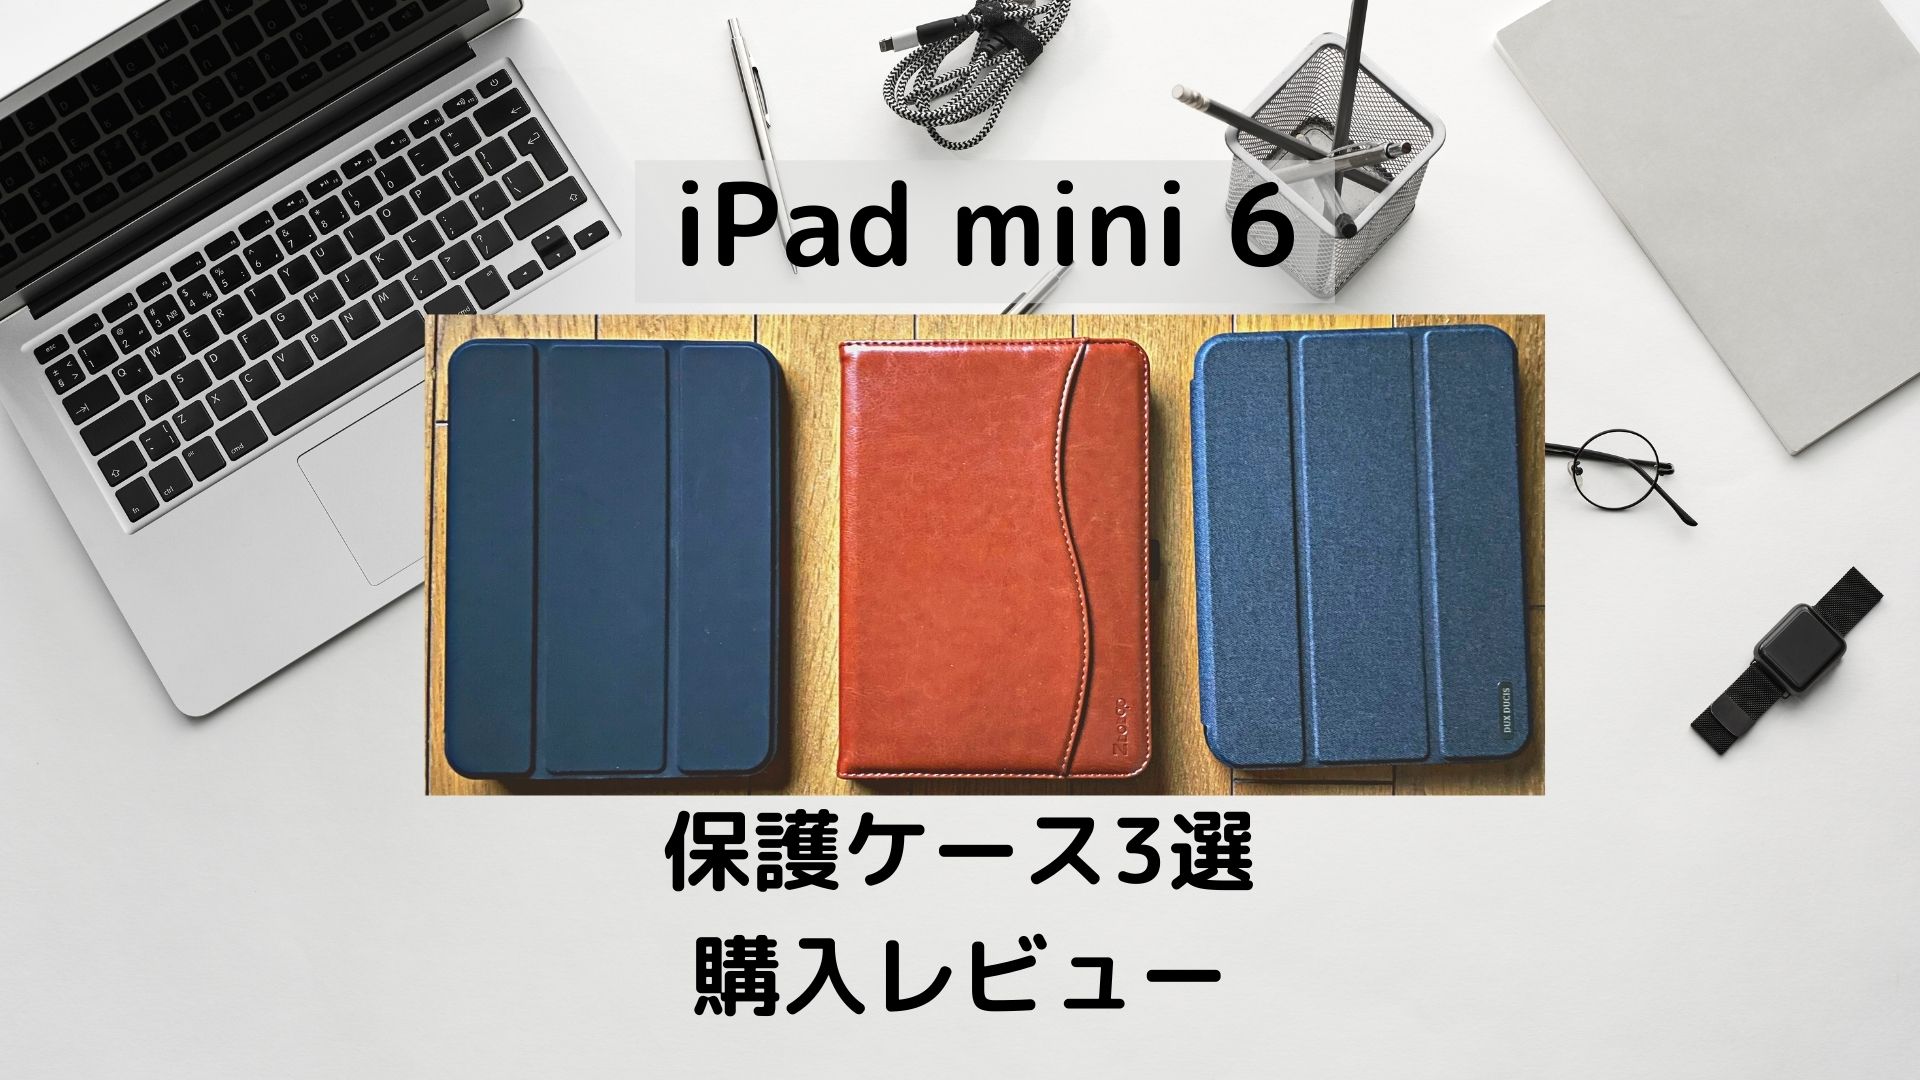 iPad mini 6】保護ケース 3種類 購入レビュー 純正より 使いやすい